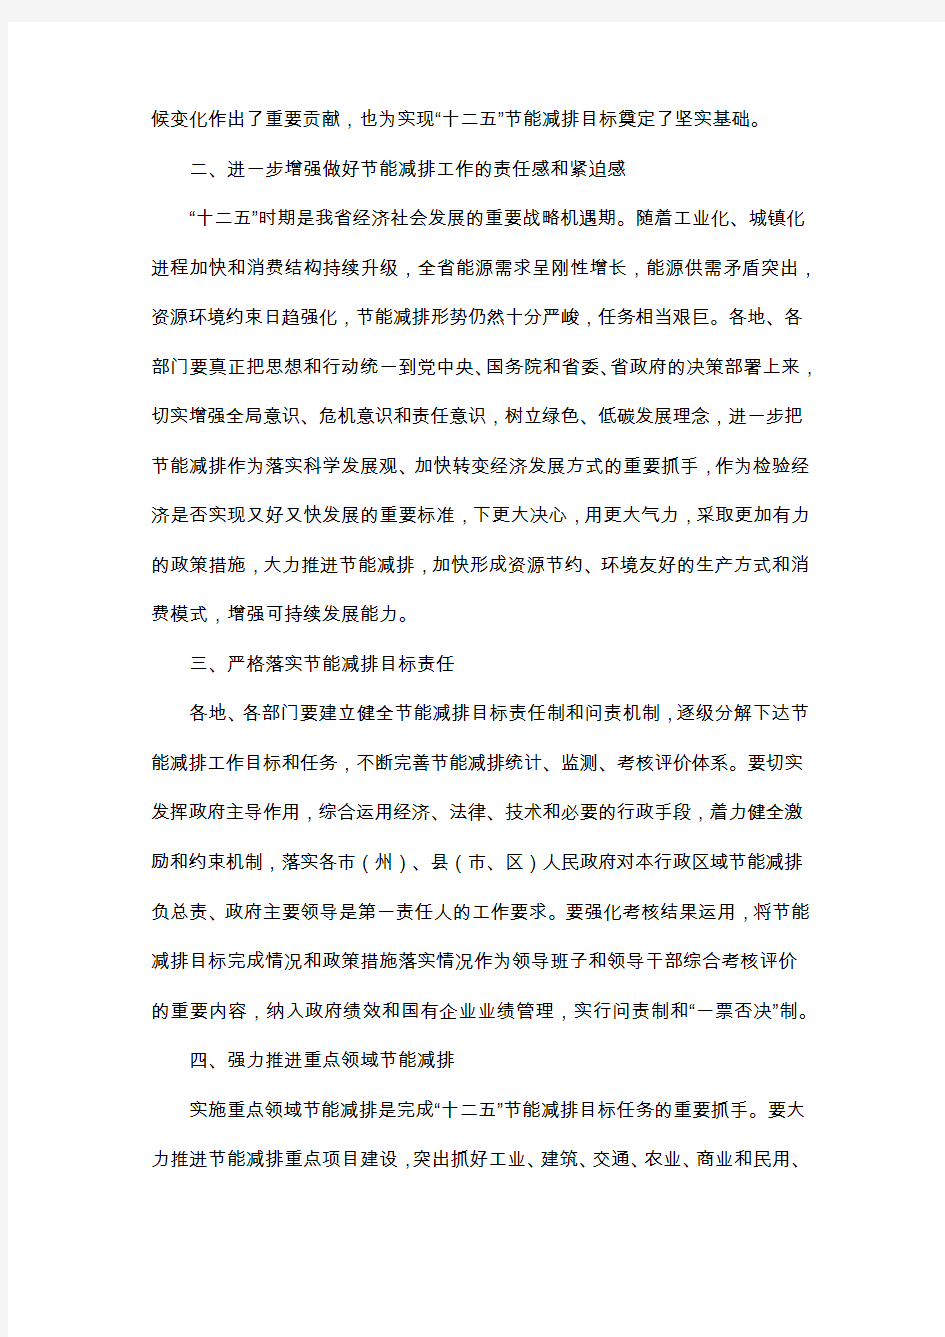 湖北省人民政府关于印发湖北省“十二五”节能减排综合性工作方案的通知